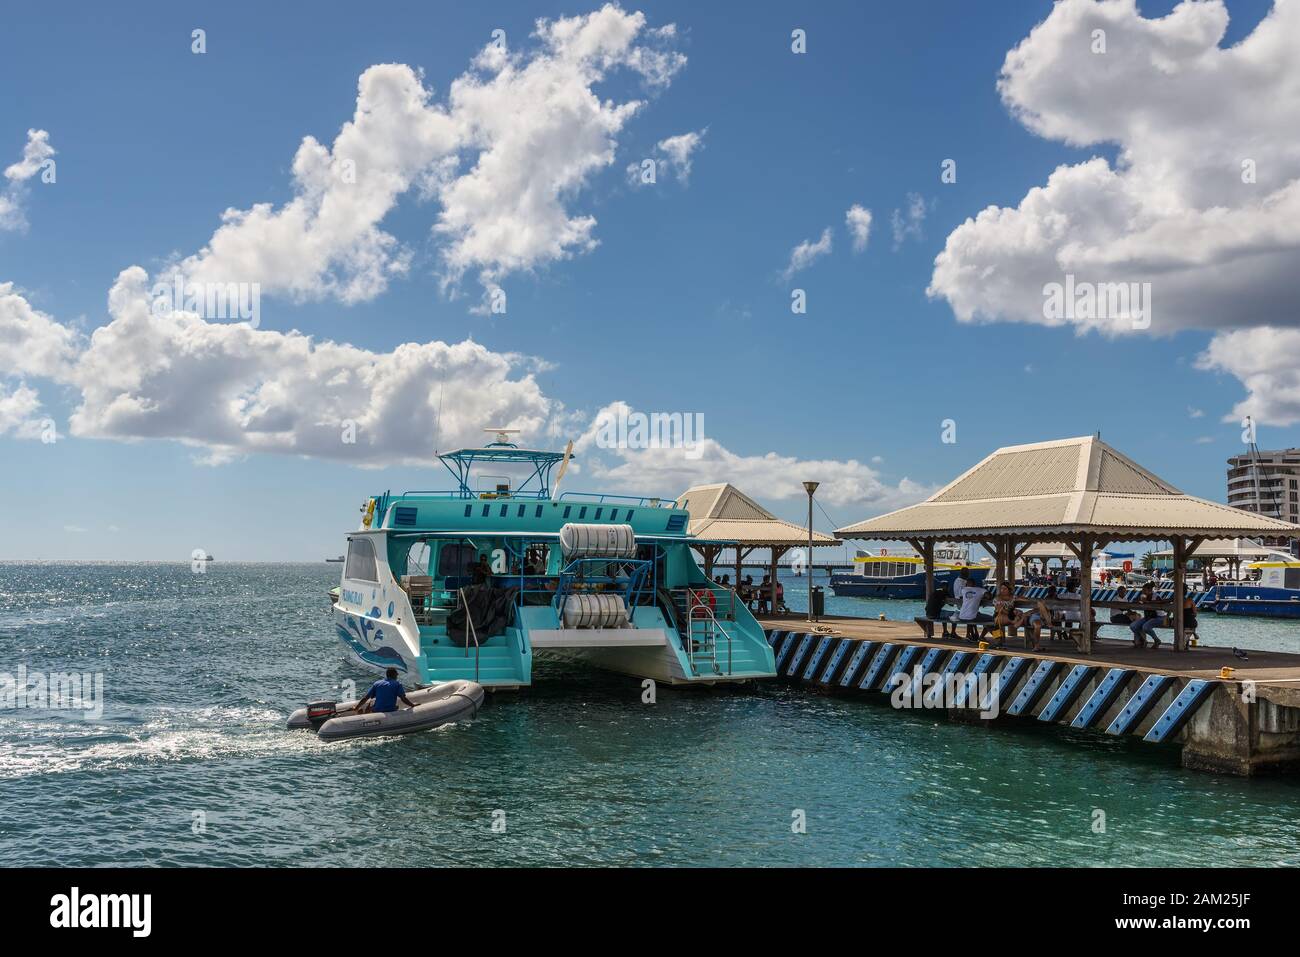 Fort-de-France, Martinica - Dicembre 13, 2018: Catamaran Ryngray presso il molo del porto di Fort-de-France, Francia Caraibi del dipartimento della Foto Stock